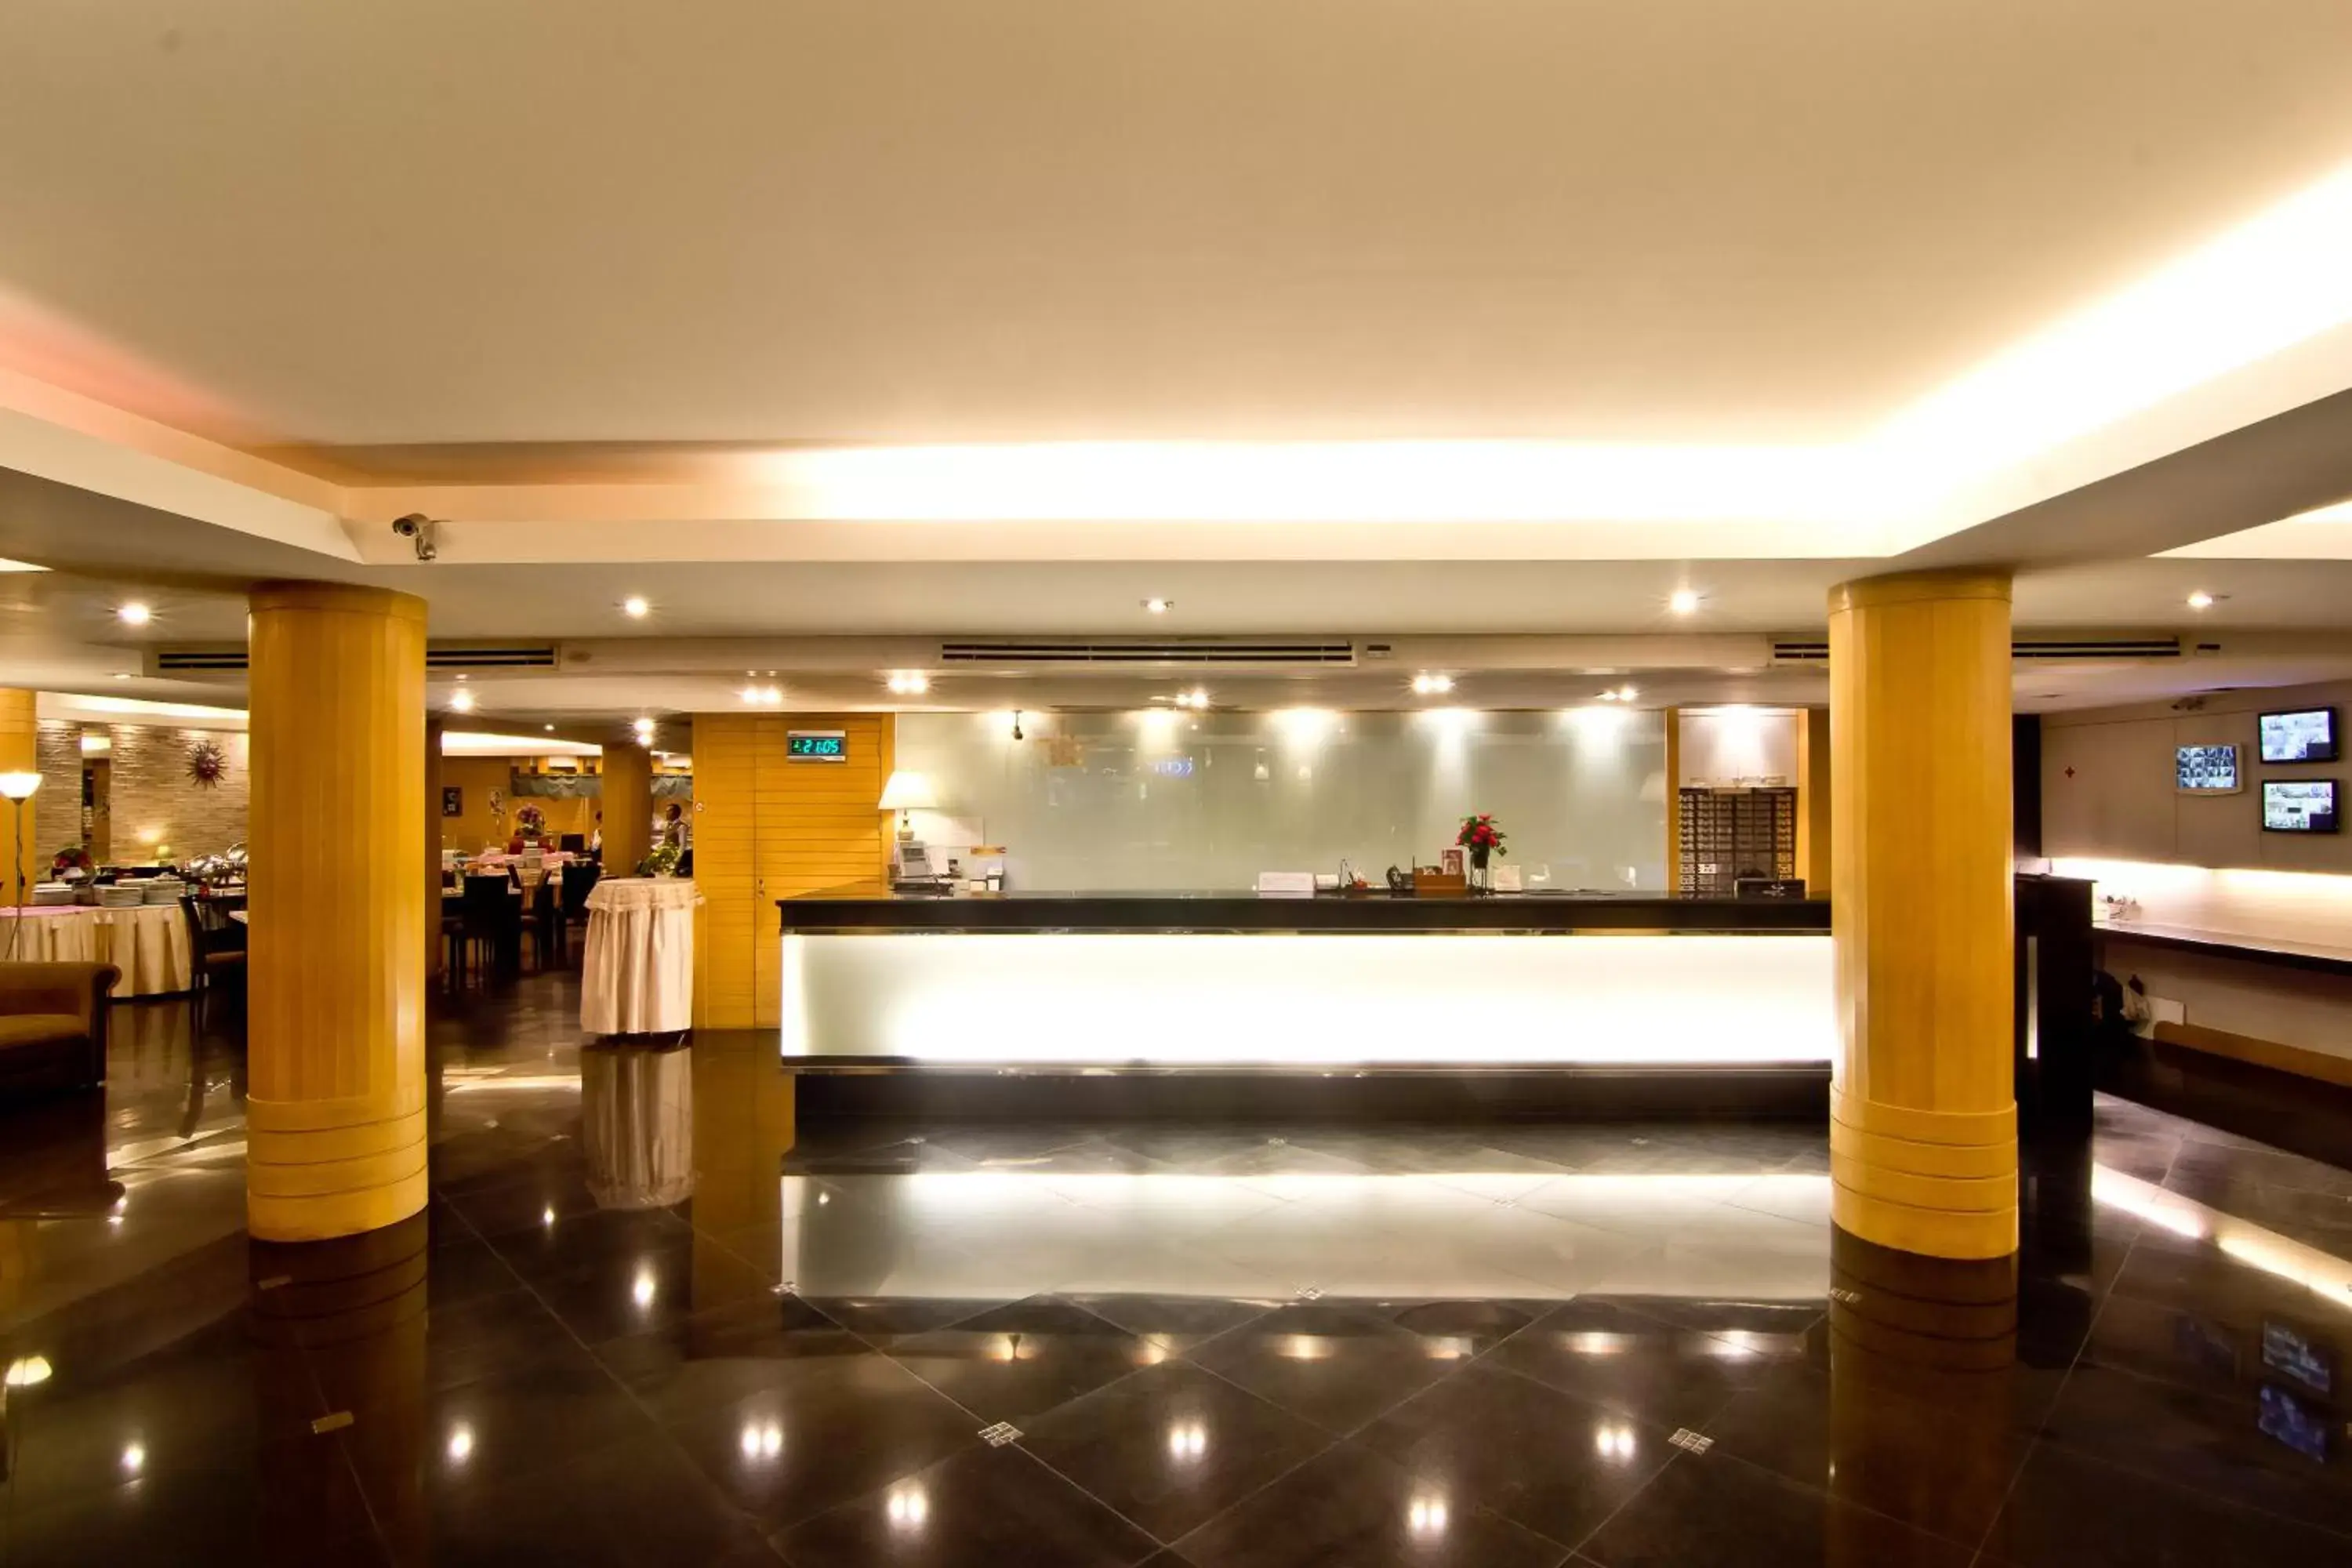 Lobby or reception, Lobby/Reception in Fortuna Hotel